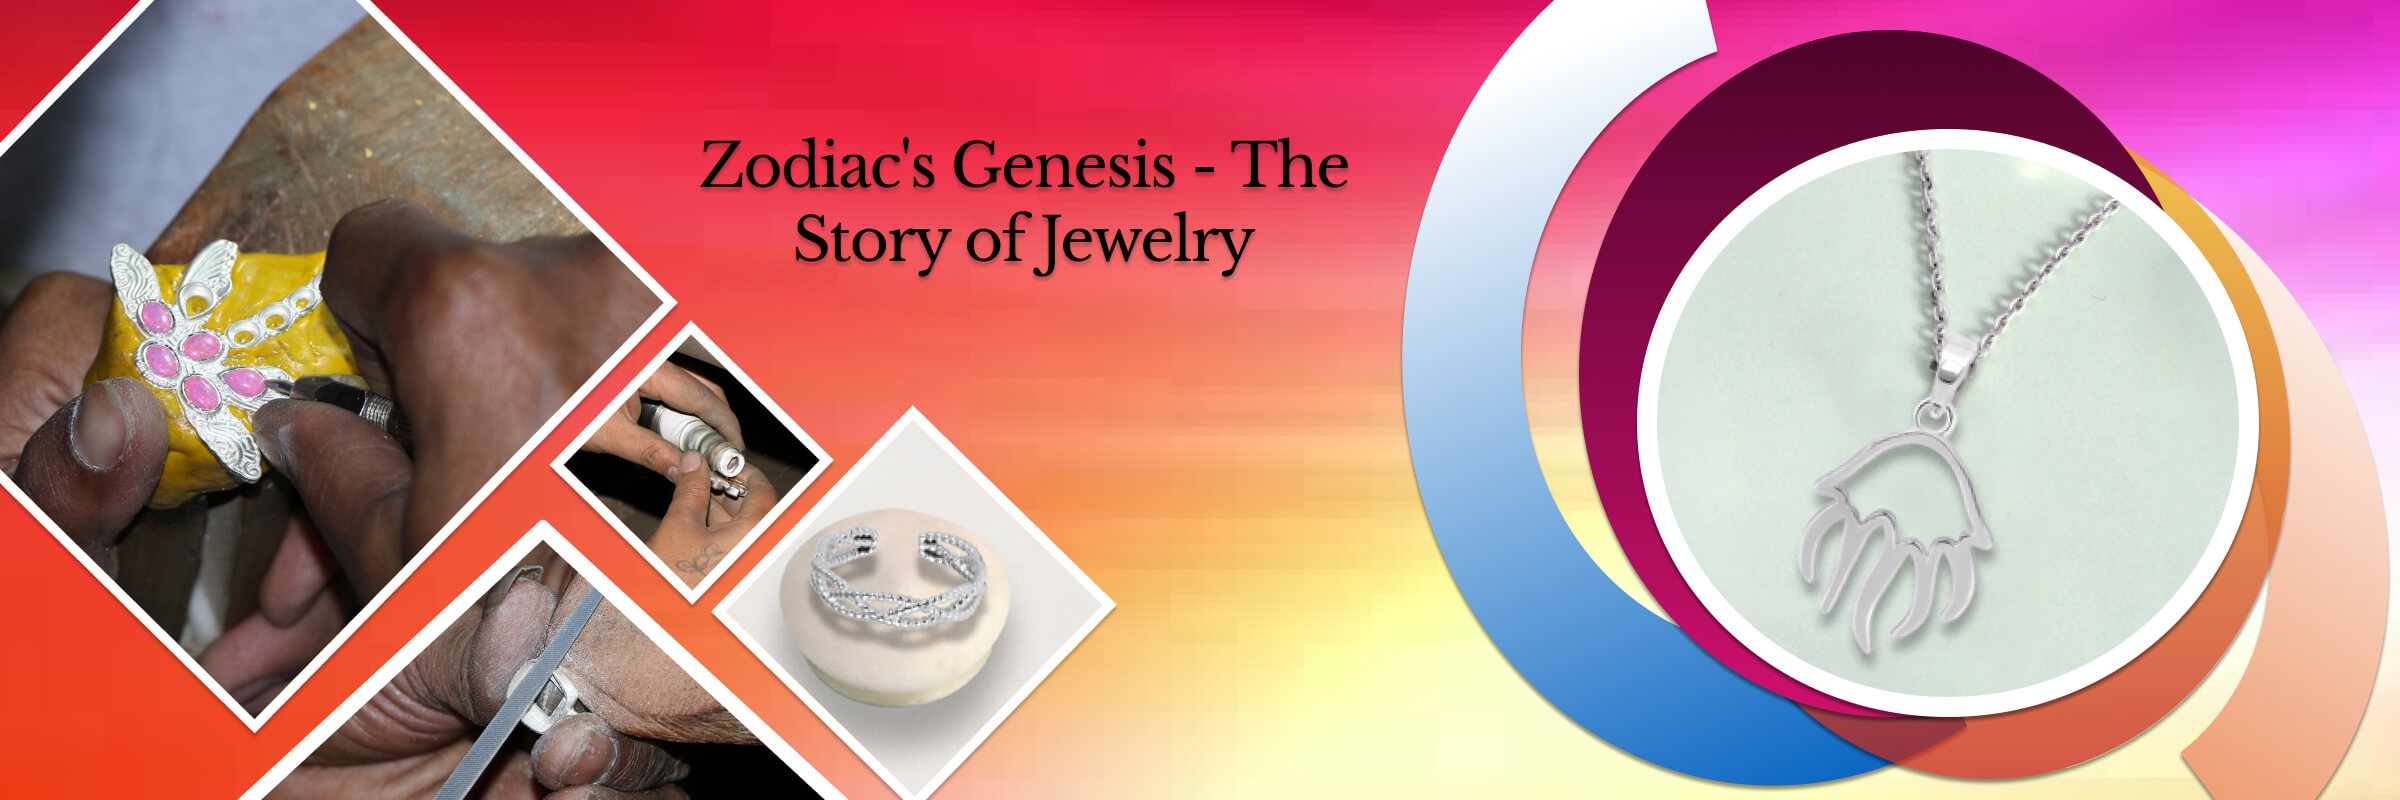 History Zodiac Sign Jewelry